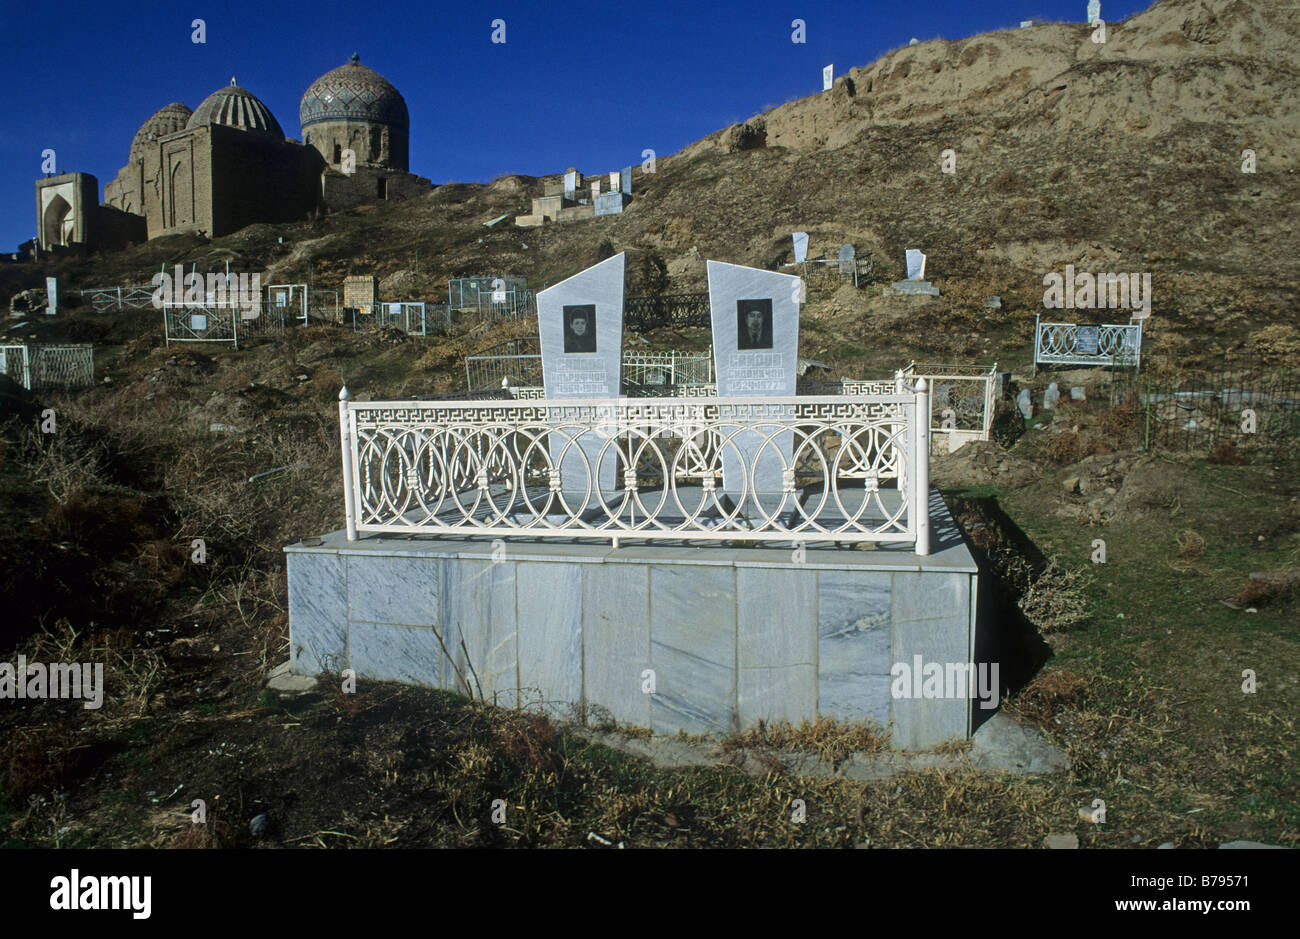 Tombes modernes et anciennes tombes à un cimetière dans la nécropole Chakhi Zinda Samarkand mausolée complexe Asie Ouzbékistan Banque D'Images